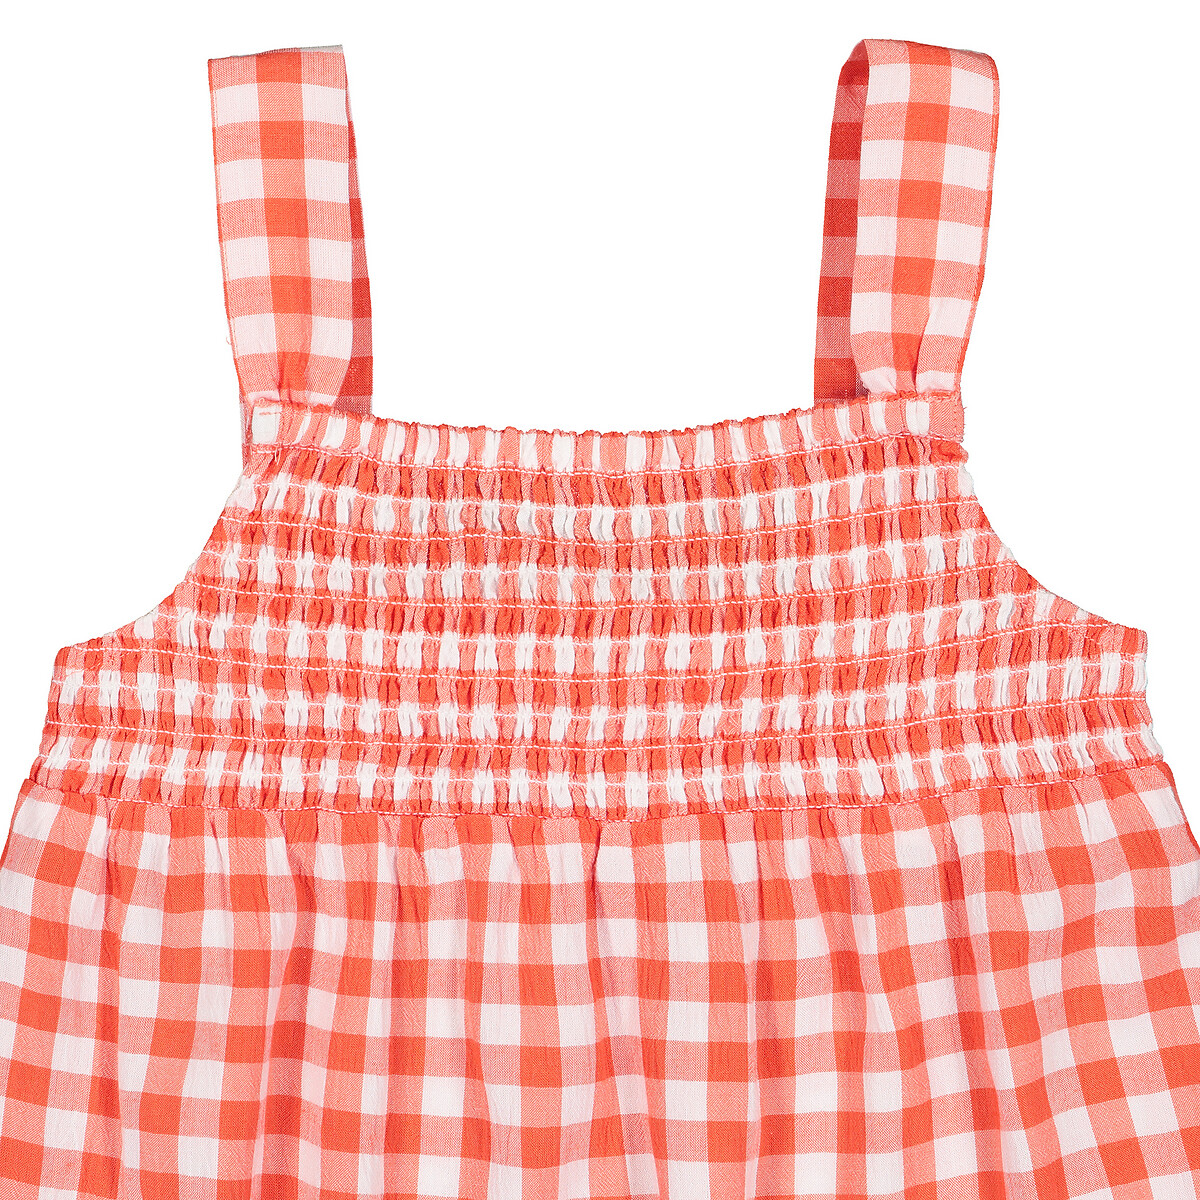 Платье LaRedoute Струящееся на бретелях в клетку 3-12 лет 4 года - 102 см оранжевый, размер 4 года - 102 см - фото 5